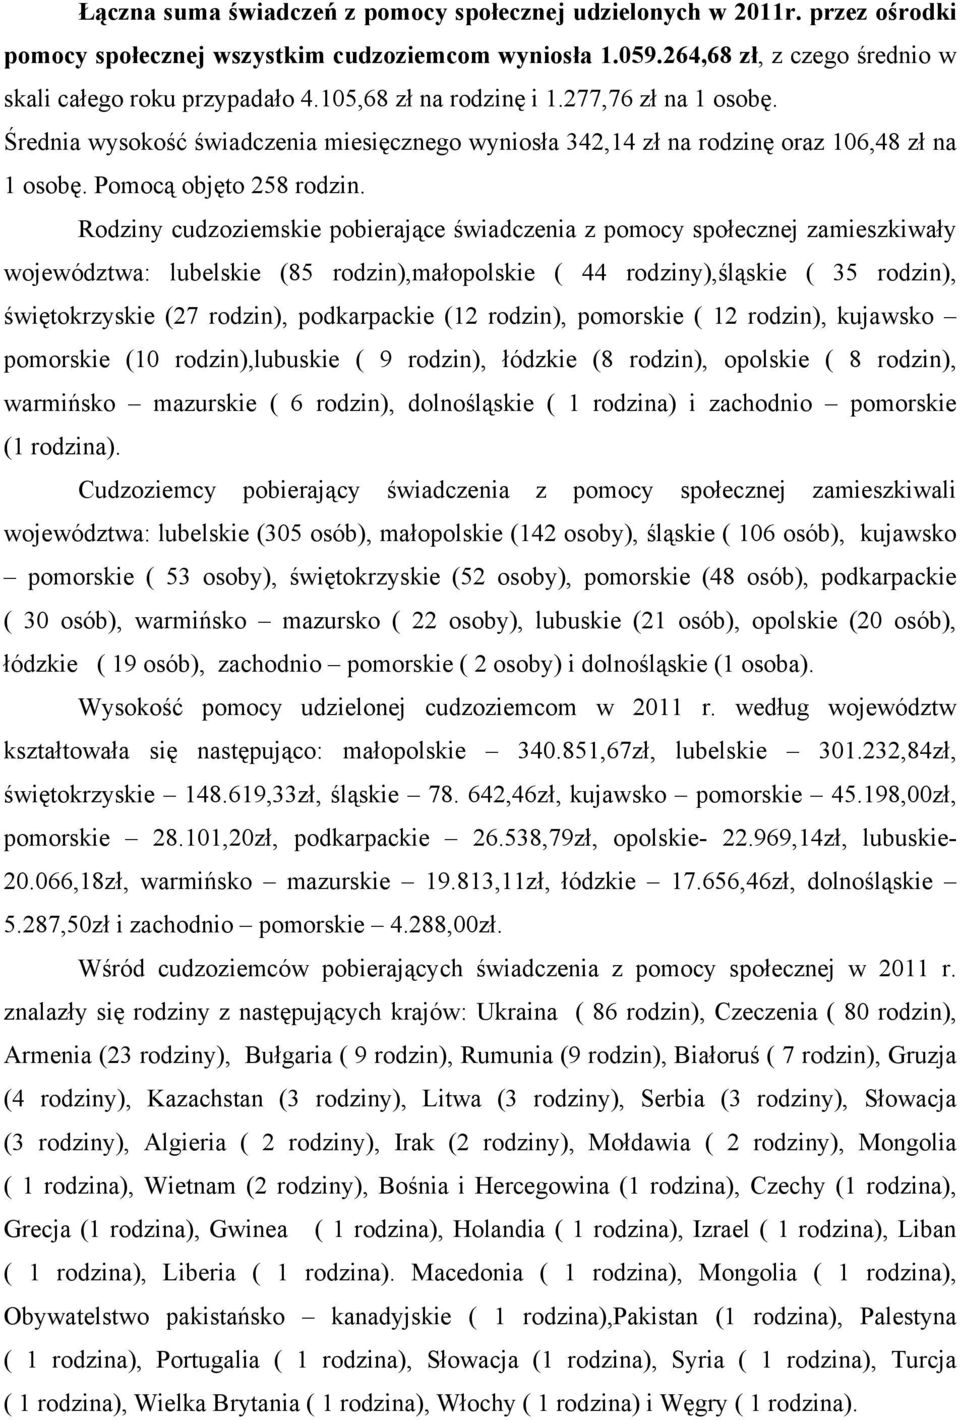 Rodziny cudzoziemskie pobierające świadczenia z pomocy społecznej zamieszkiwały województwa: lubelskie (85 rodzin),małopolskie ( 44 rodziny),śląskie ( 35 rodzin), świętokrzyskie (27 rodzin),